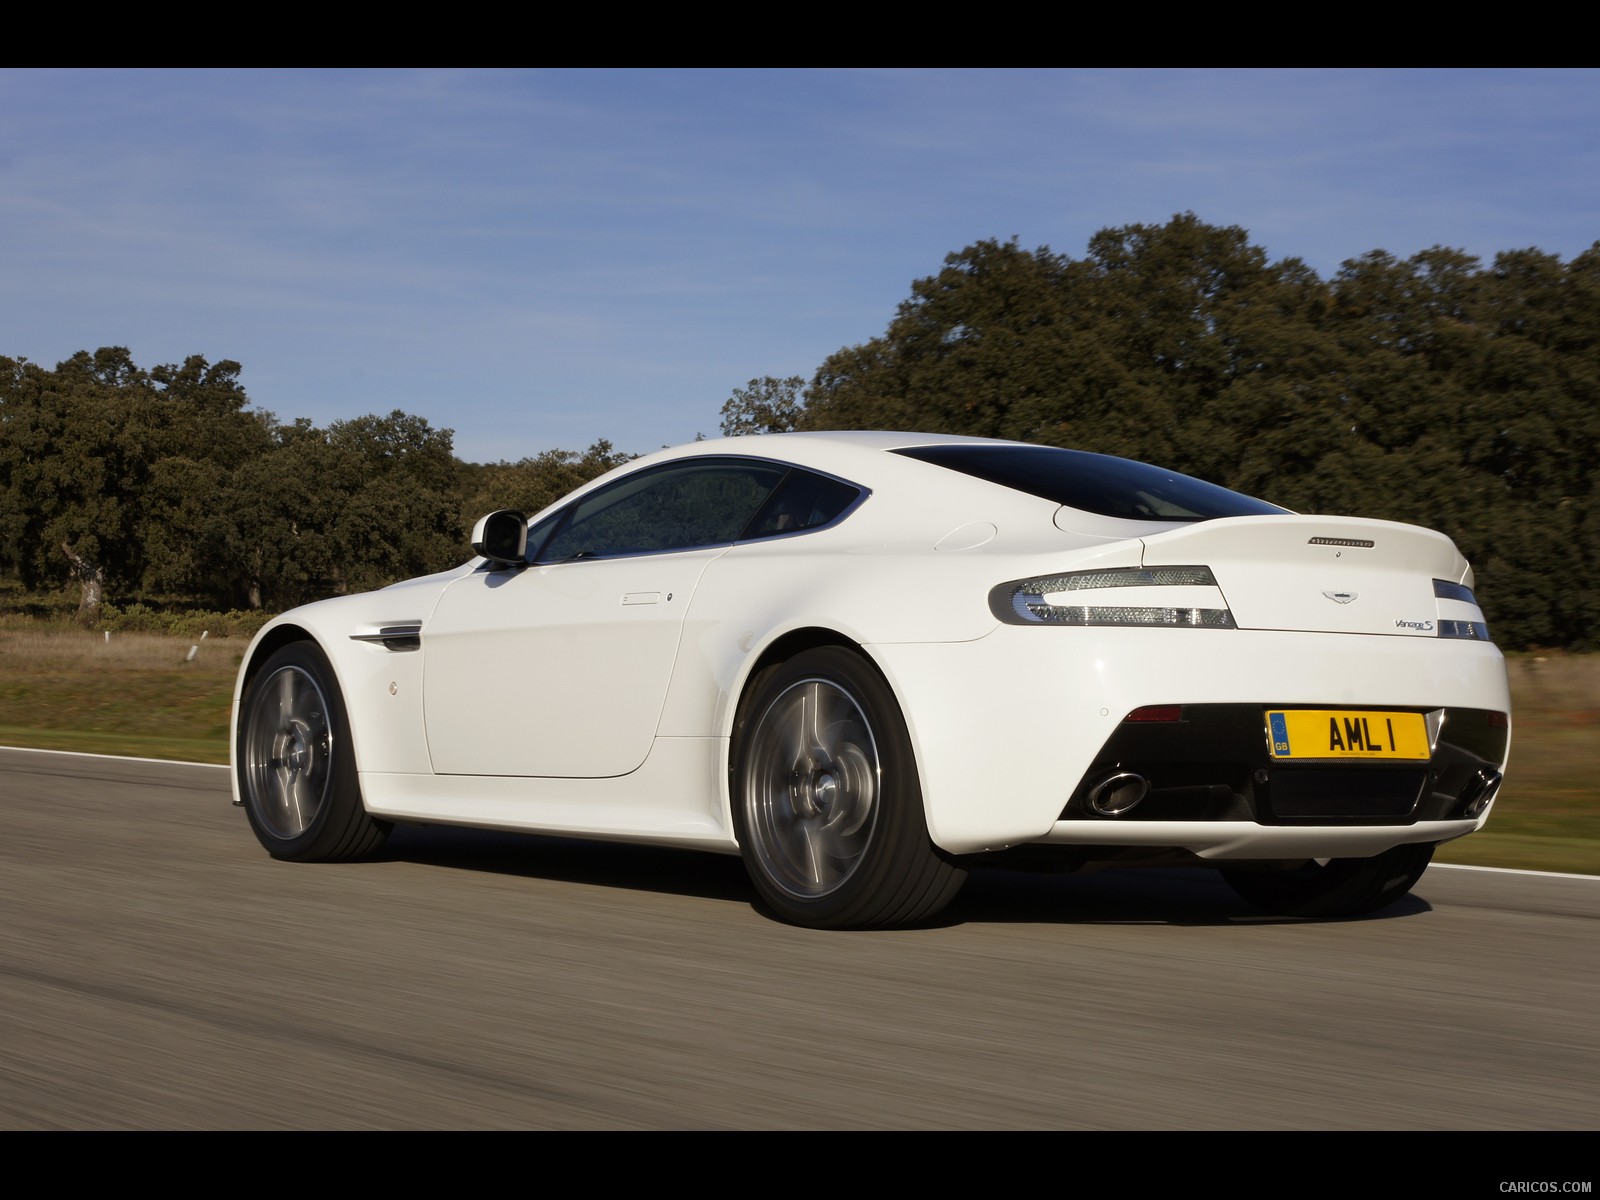 Aston Martin Vantage White